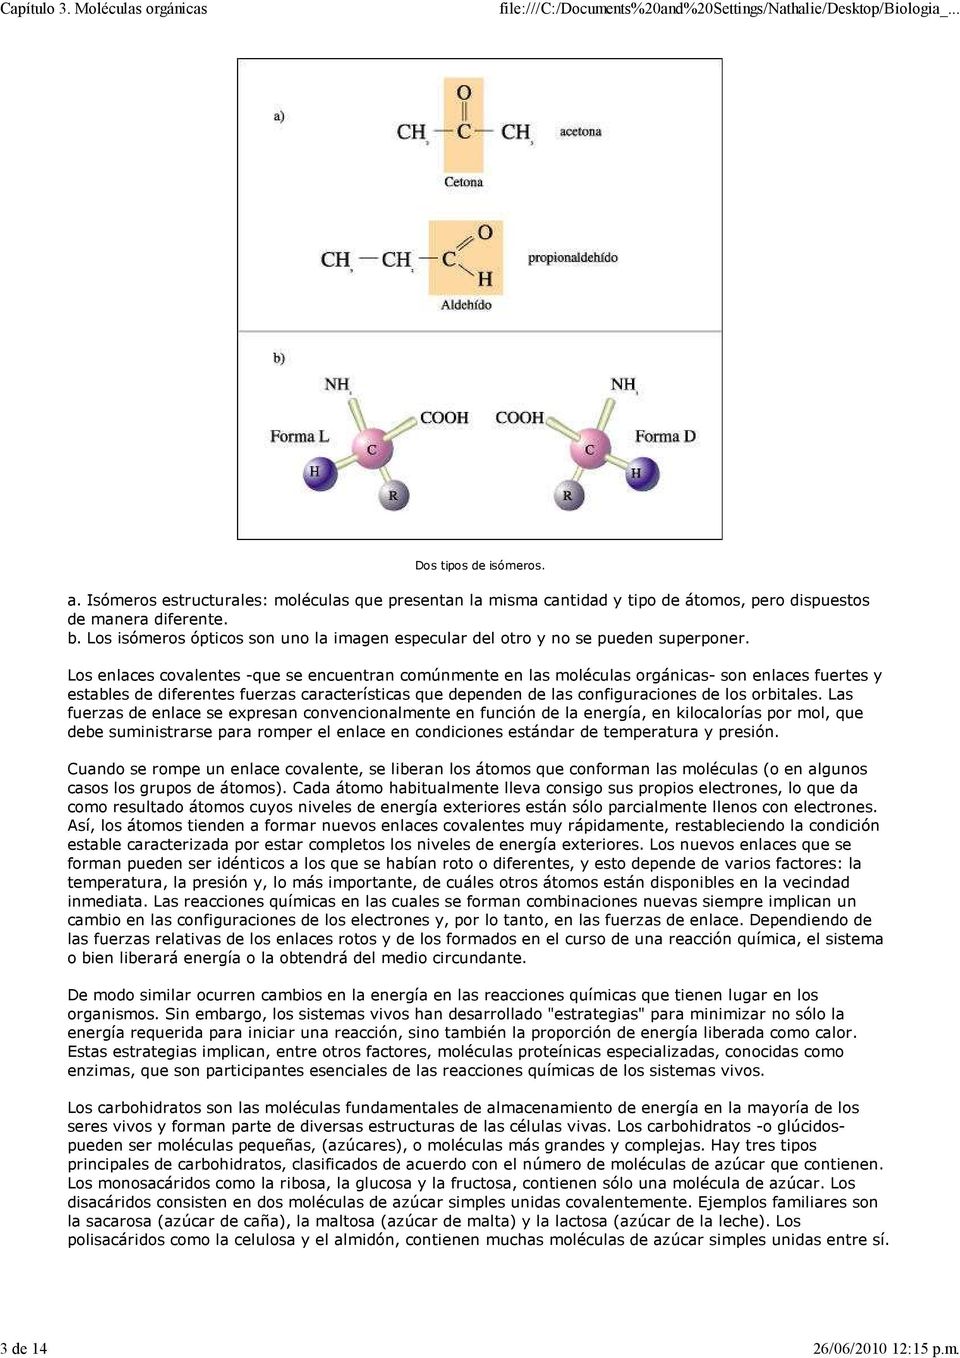 Los enlaces covalentes -que se encuentran comúnmente en las moléculas orgánicas- son enlaces fuertes y estables de diferentes fuerzas características que dependen de las configuraciones de los